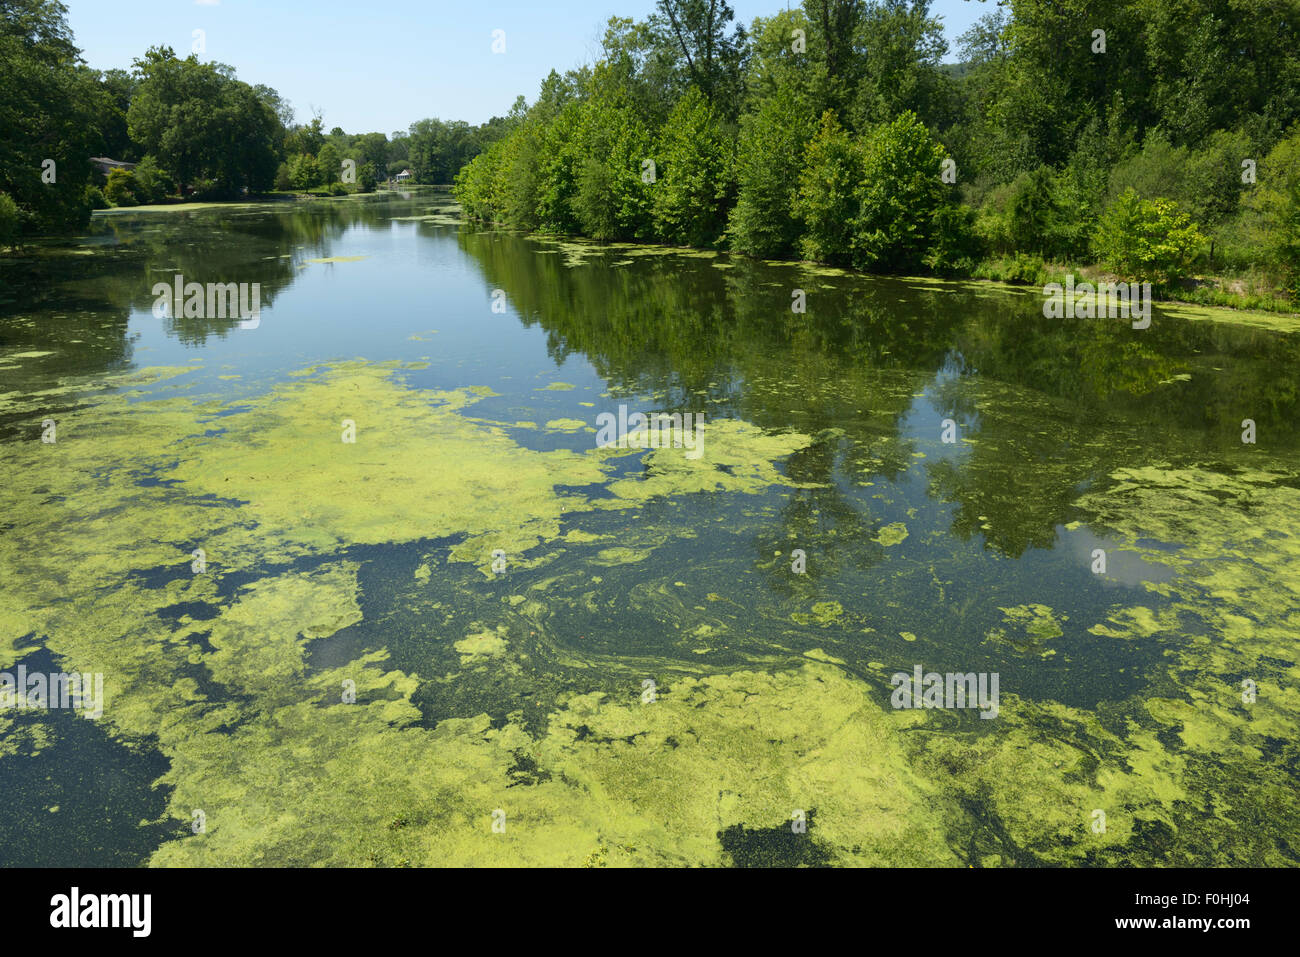 Algues résultant de l'eutrophisation, la rivière Ramapo, nord de la pollution de l'eau (New Jersey). Banque D'Images